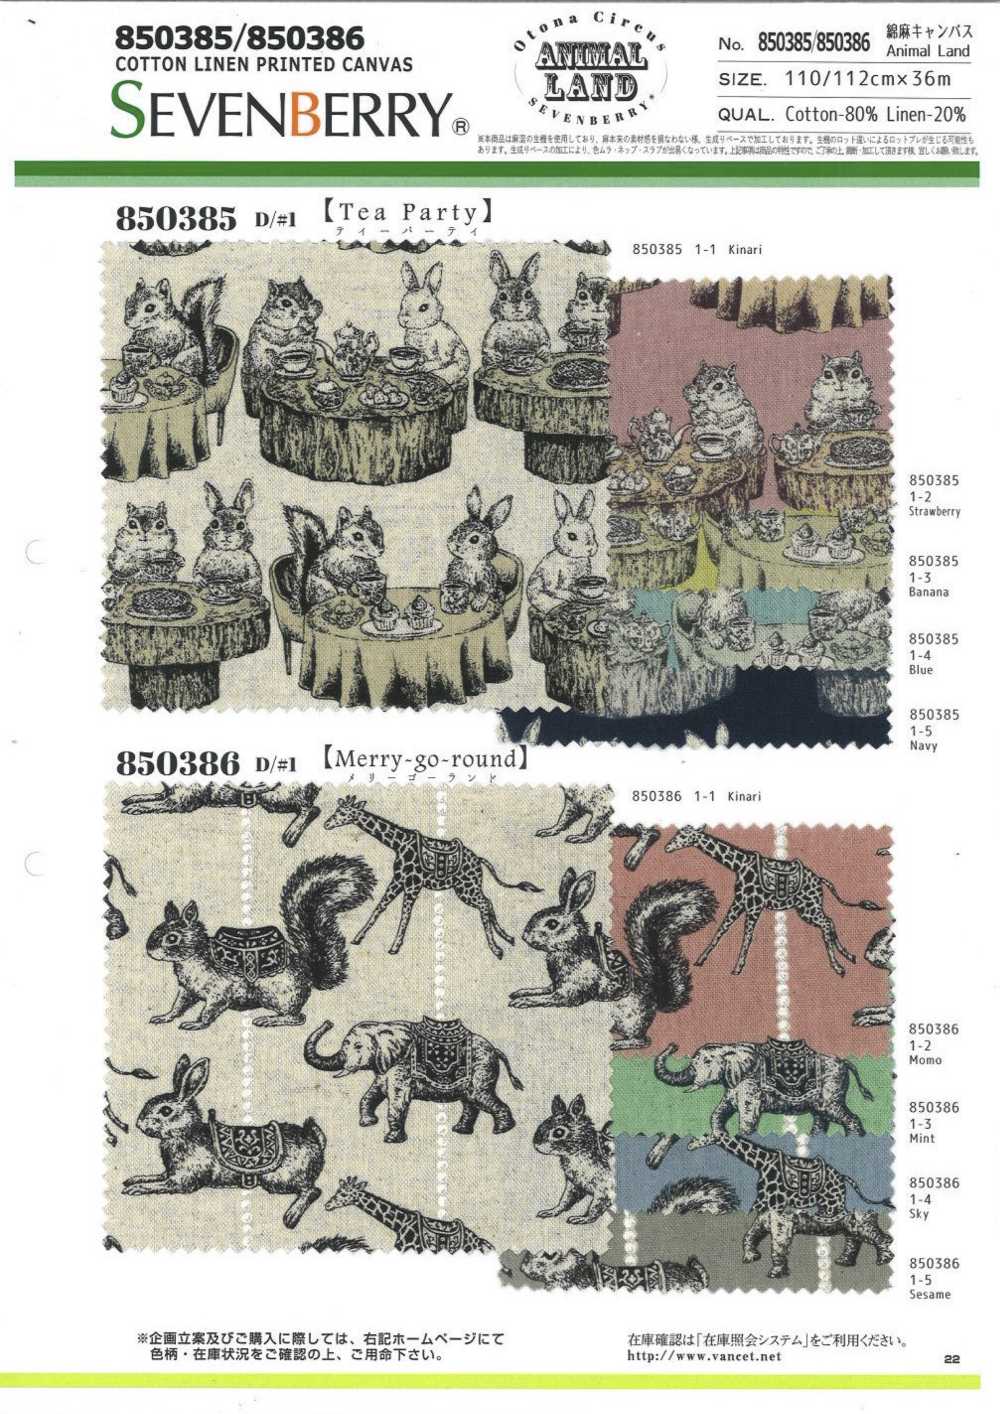 850386 Lin Toile De Lin Animal Land Manège[Fabrication De Textile] VANCET